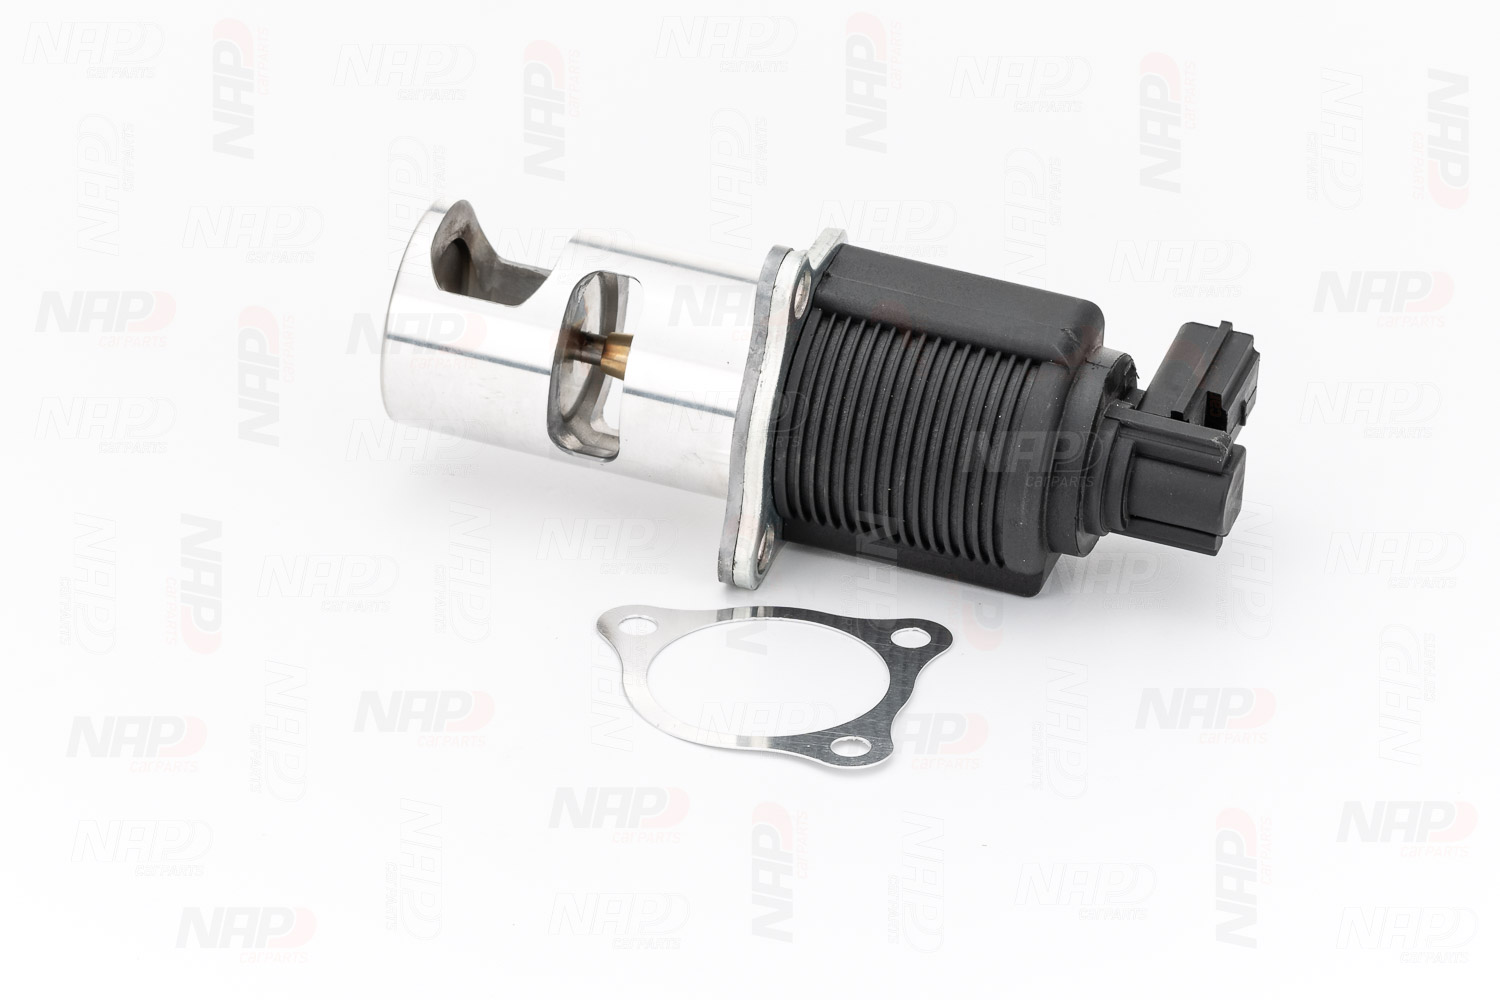 Original NAP carparts Exhaust gas recirculation valve CAV10018 for DACIA SANDERO